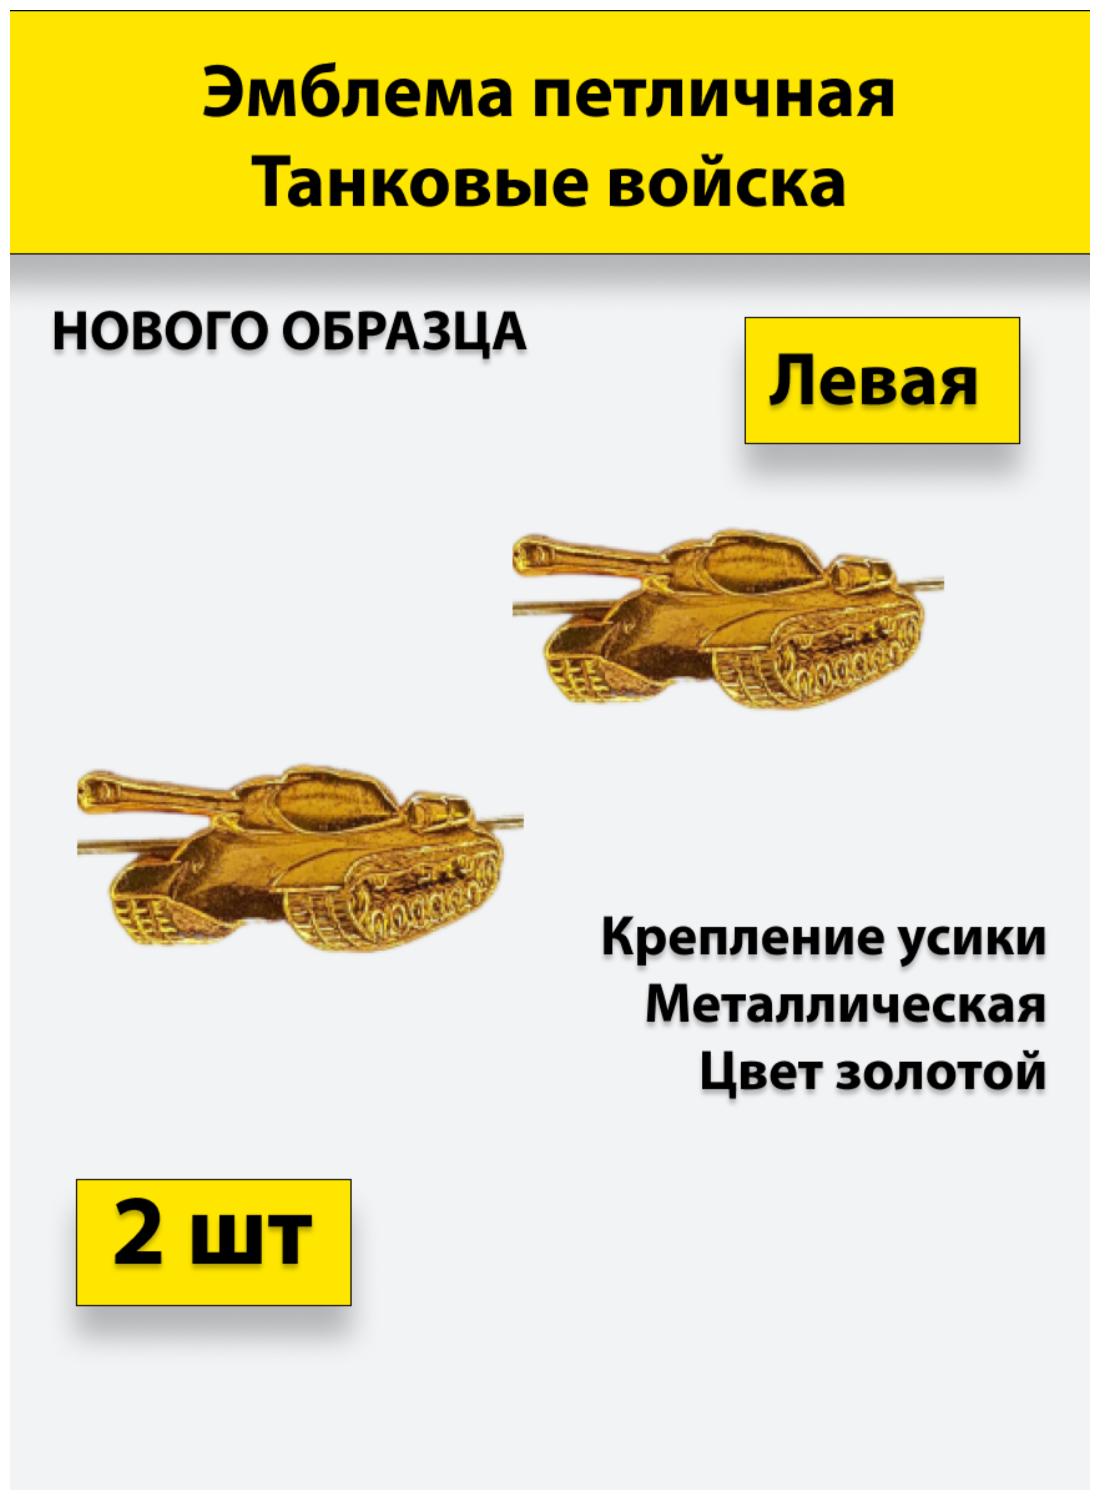 Эмблема петличная Танковые войска нового образца золотая, (левая) 2 штуки, металлические